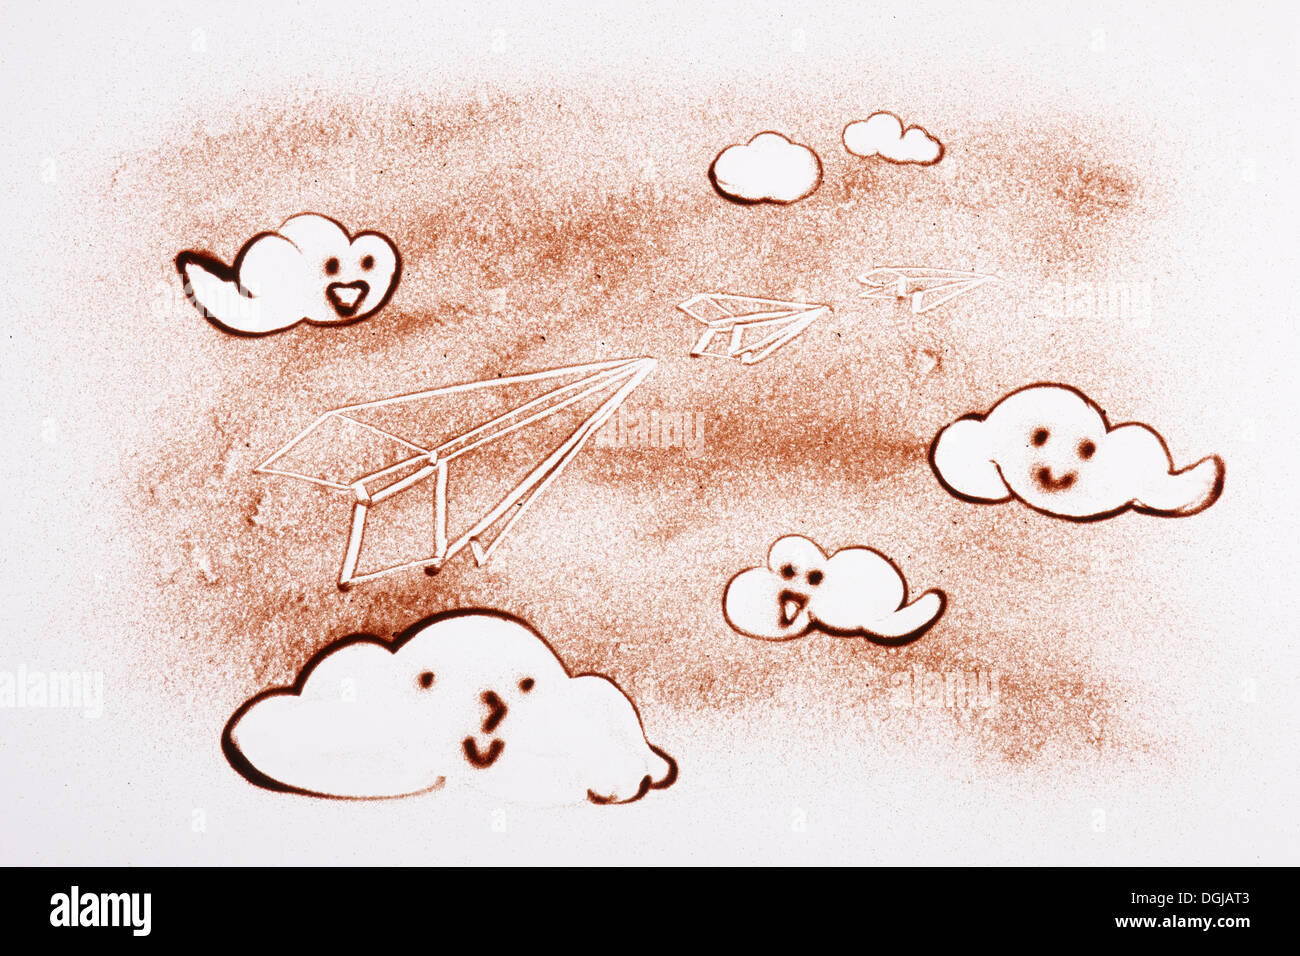 Un dessin sur sable de nuages dans le ciel Banque D'Images